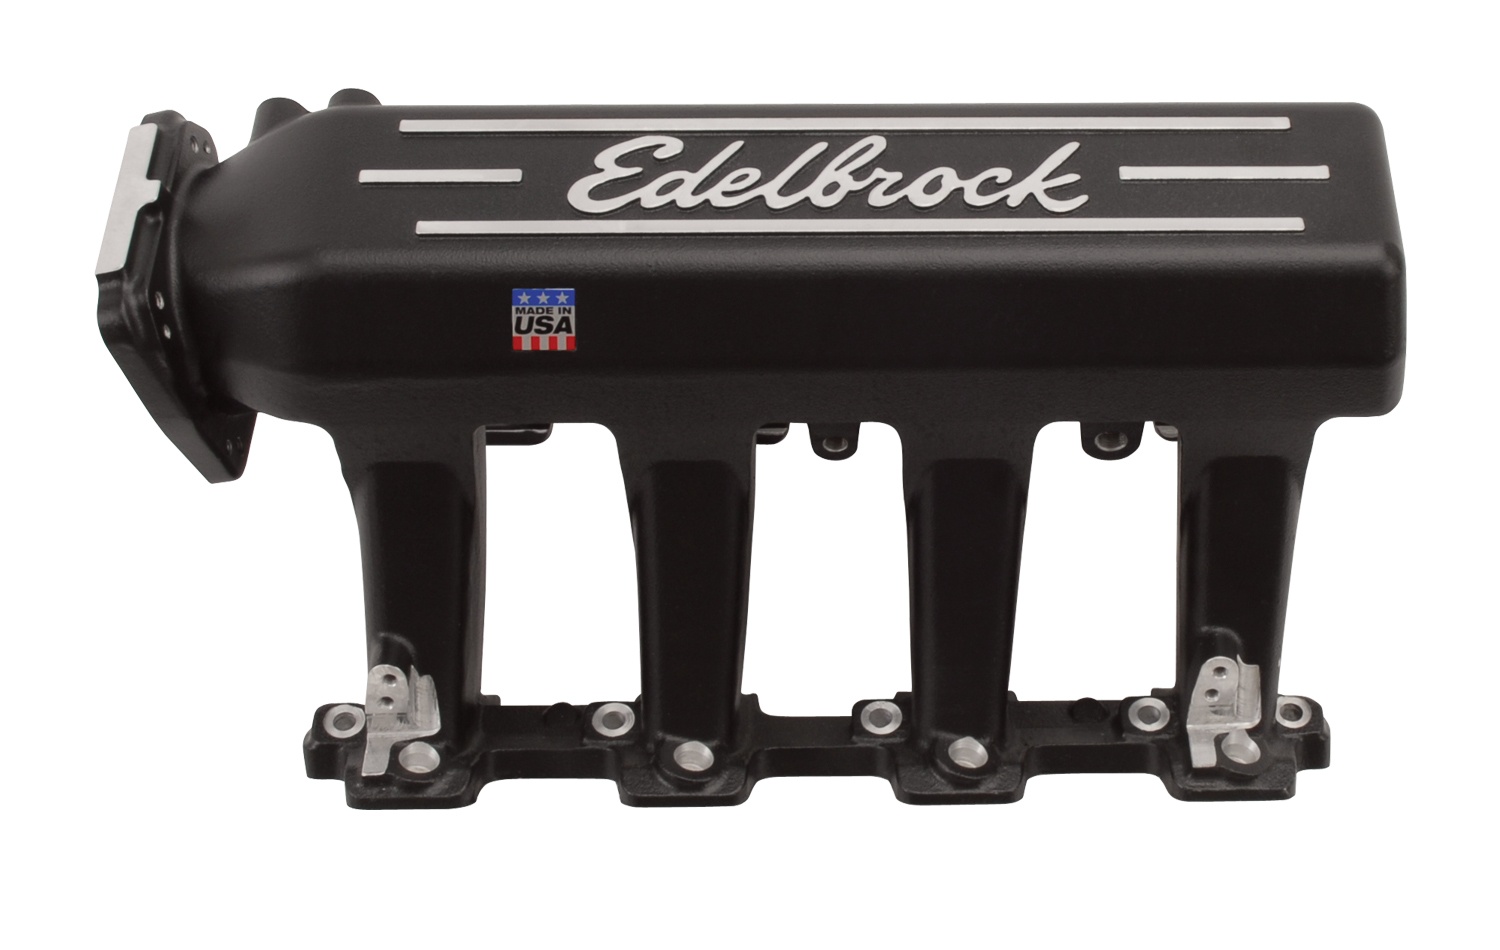 Edelbrock EFI Manifold Pro Flo XT GM LS1, With Black Powder Coated Finish, Part# 71393